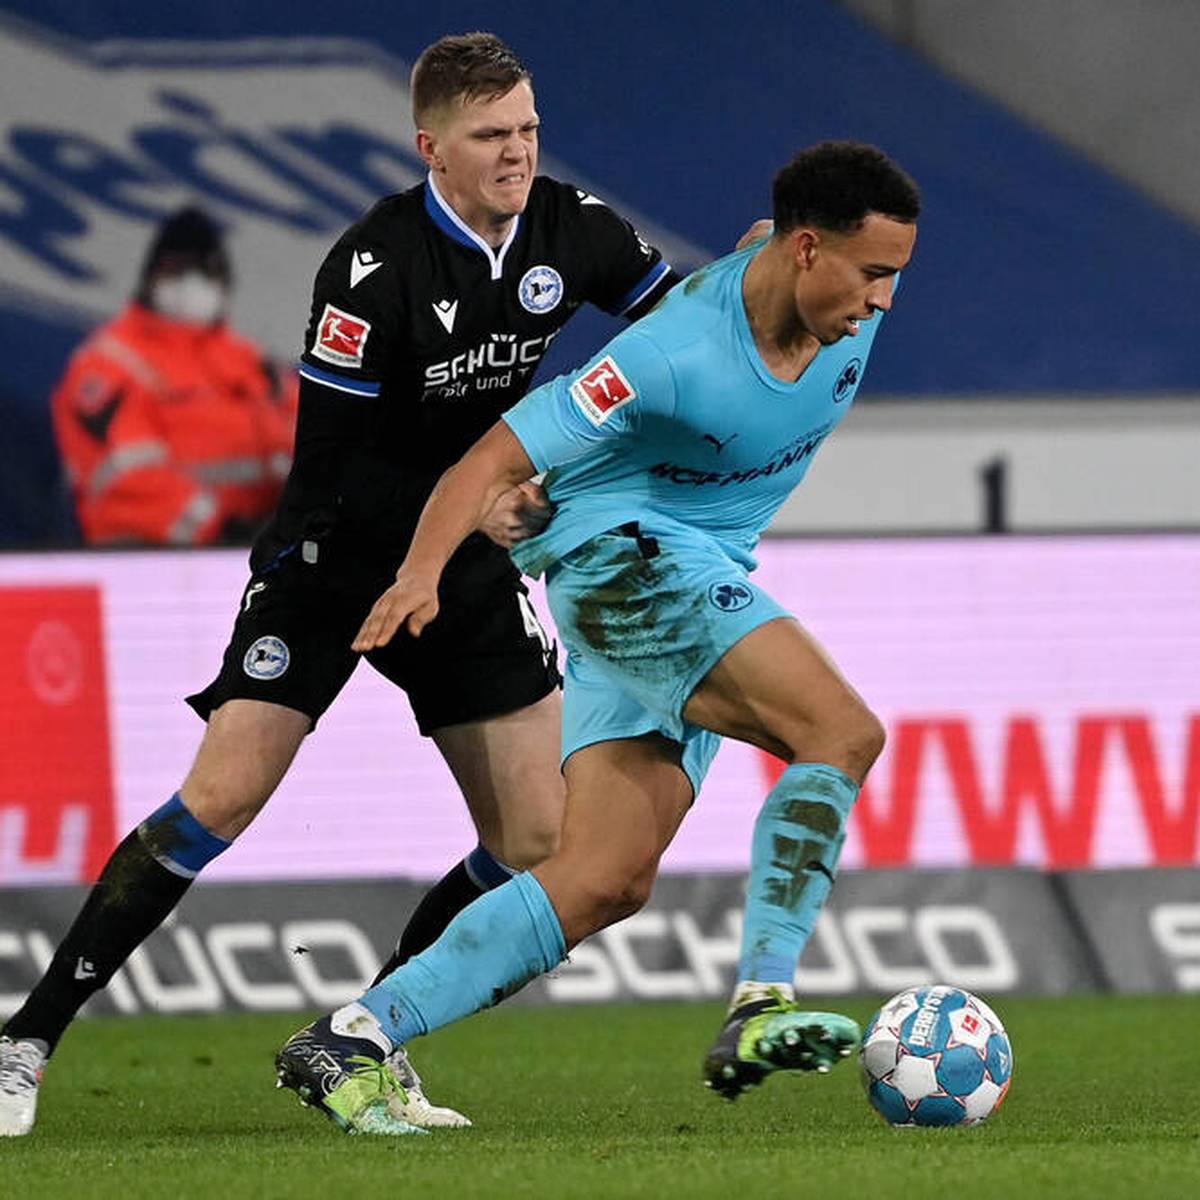 Zum Abschluss des 19. Spieltags trennt sich Arminia Bielefeld im Kellerduell gegen Greuther Fürth nur remis. Damit verpassen die Ostwestfalen den Sprung von den Abstiegsplätzen.